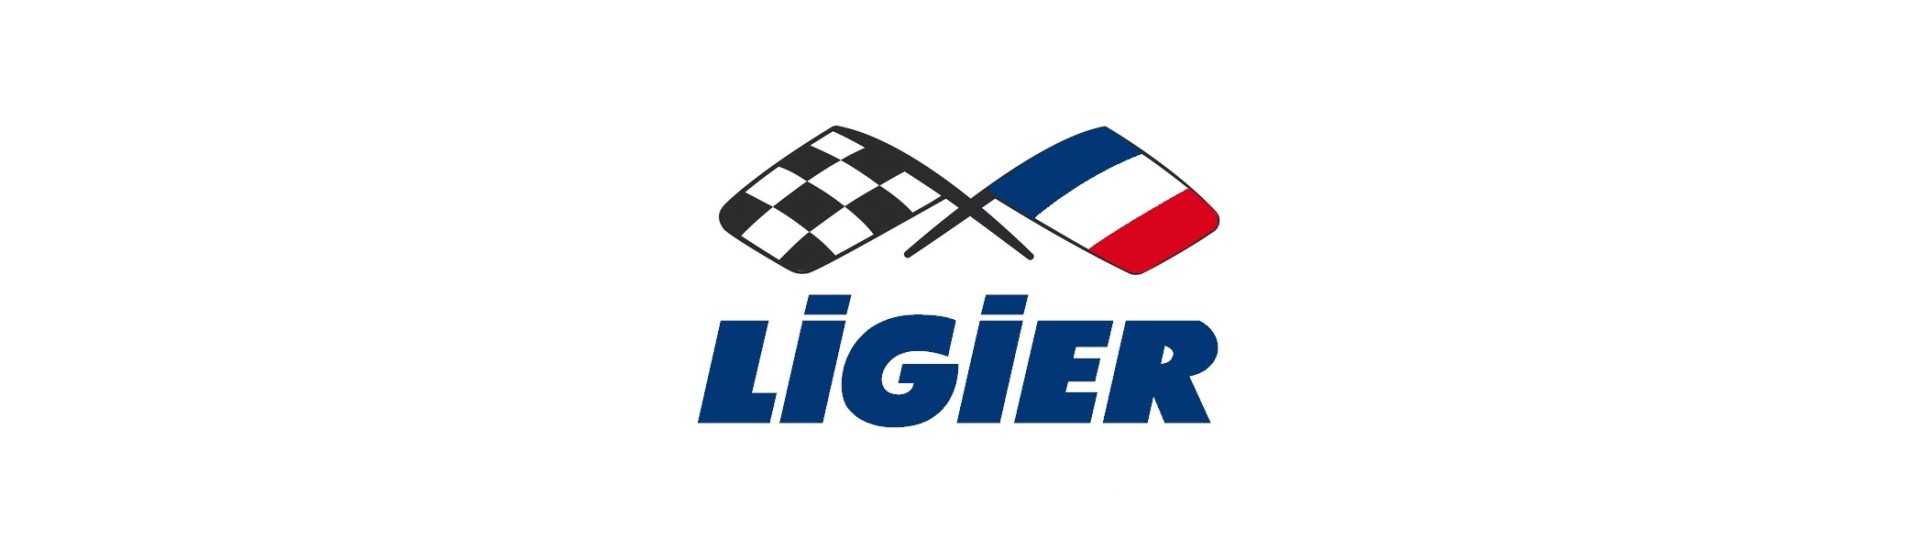 Handbromskabel till bästa pris för bil utan tillstånd Ligier